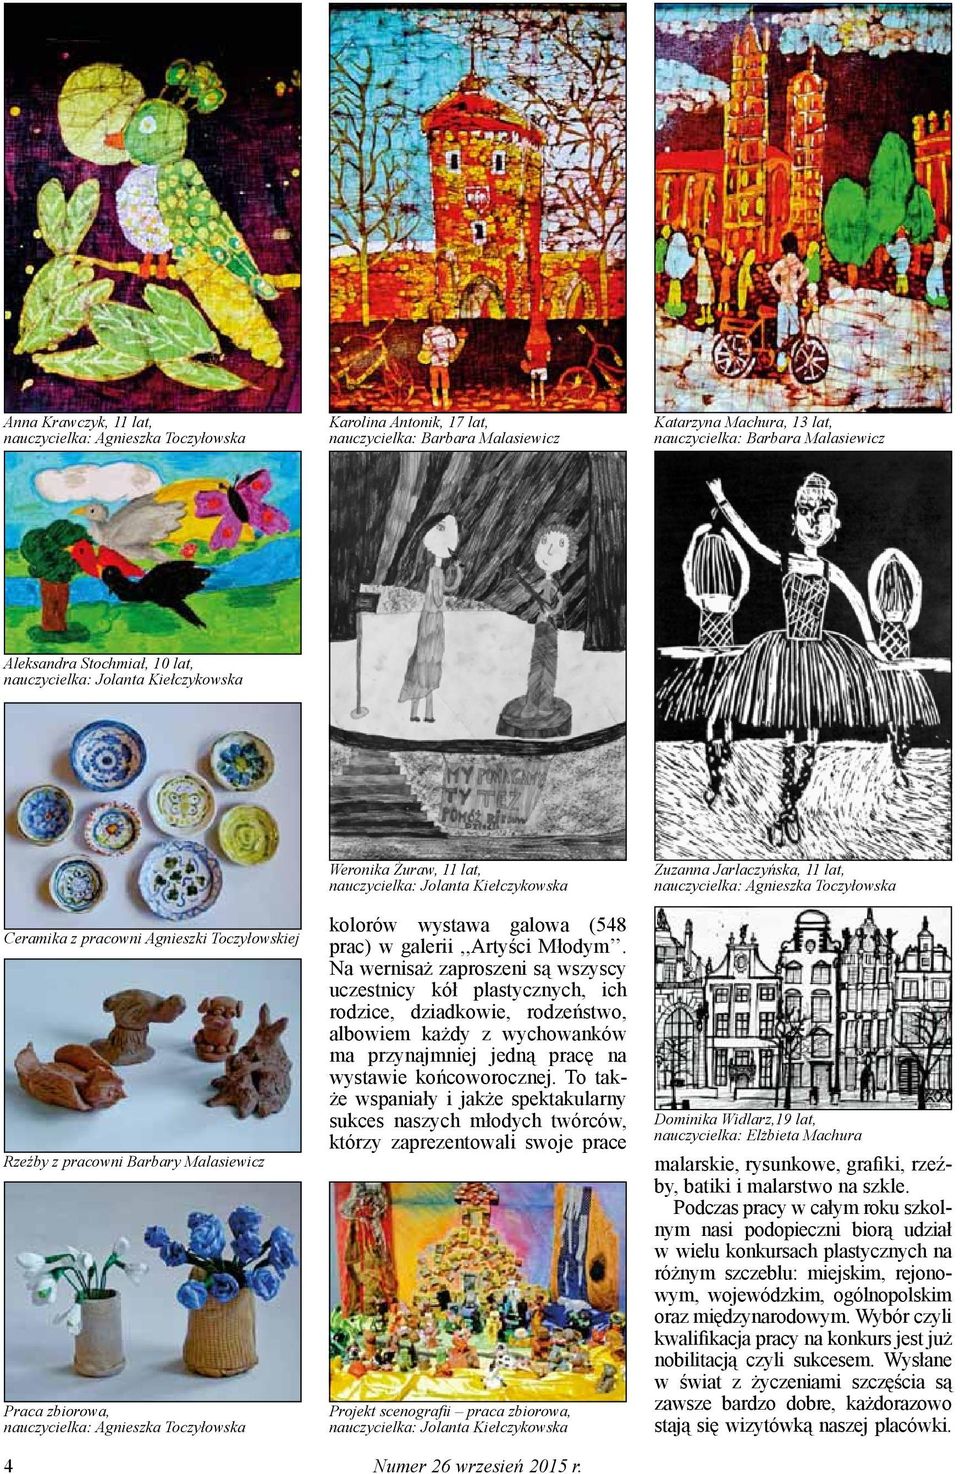 Żuraw, 11 lat, nauczycielka: Jolanta Kiełczykowska kolorów wystawa galowa (548 prac) w galerii,,artyści Młodym.